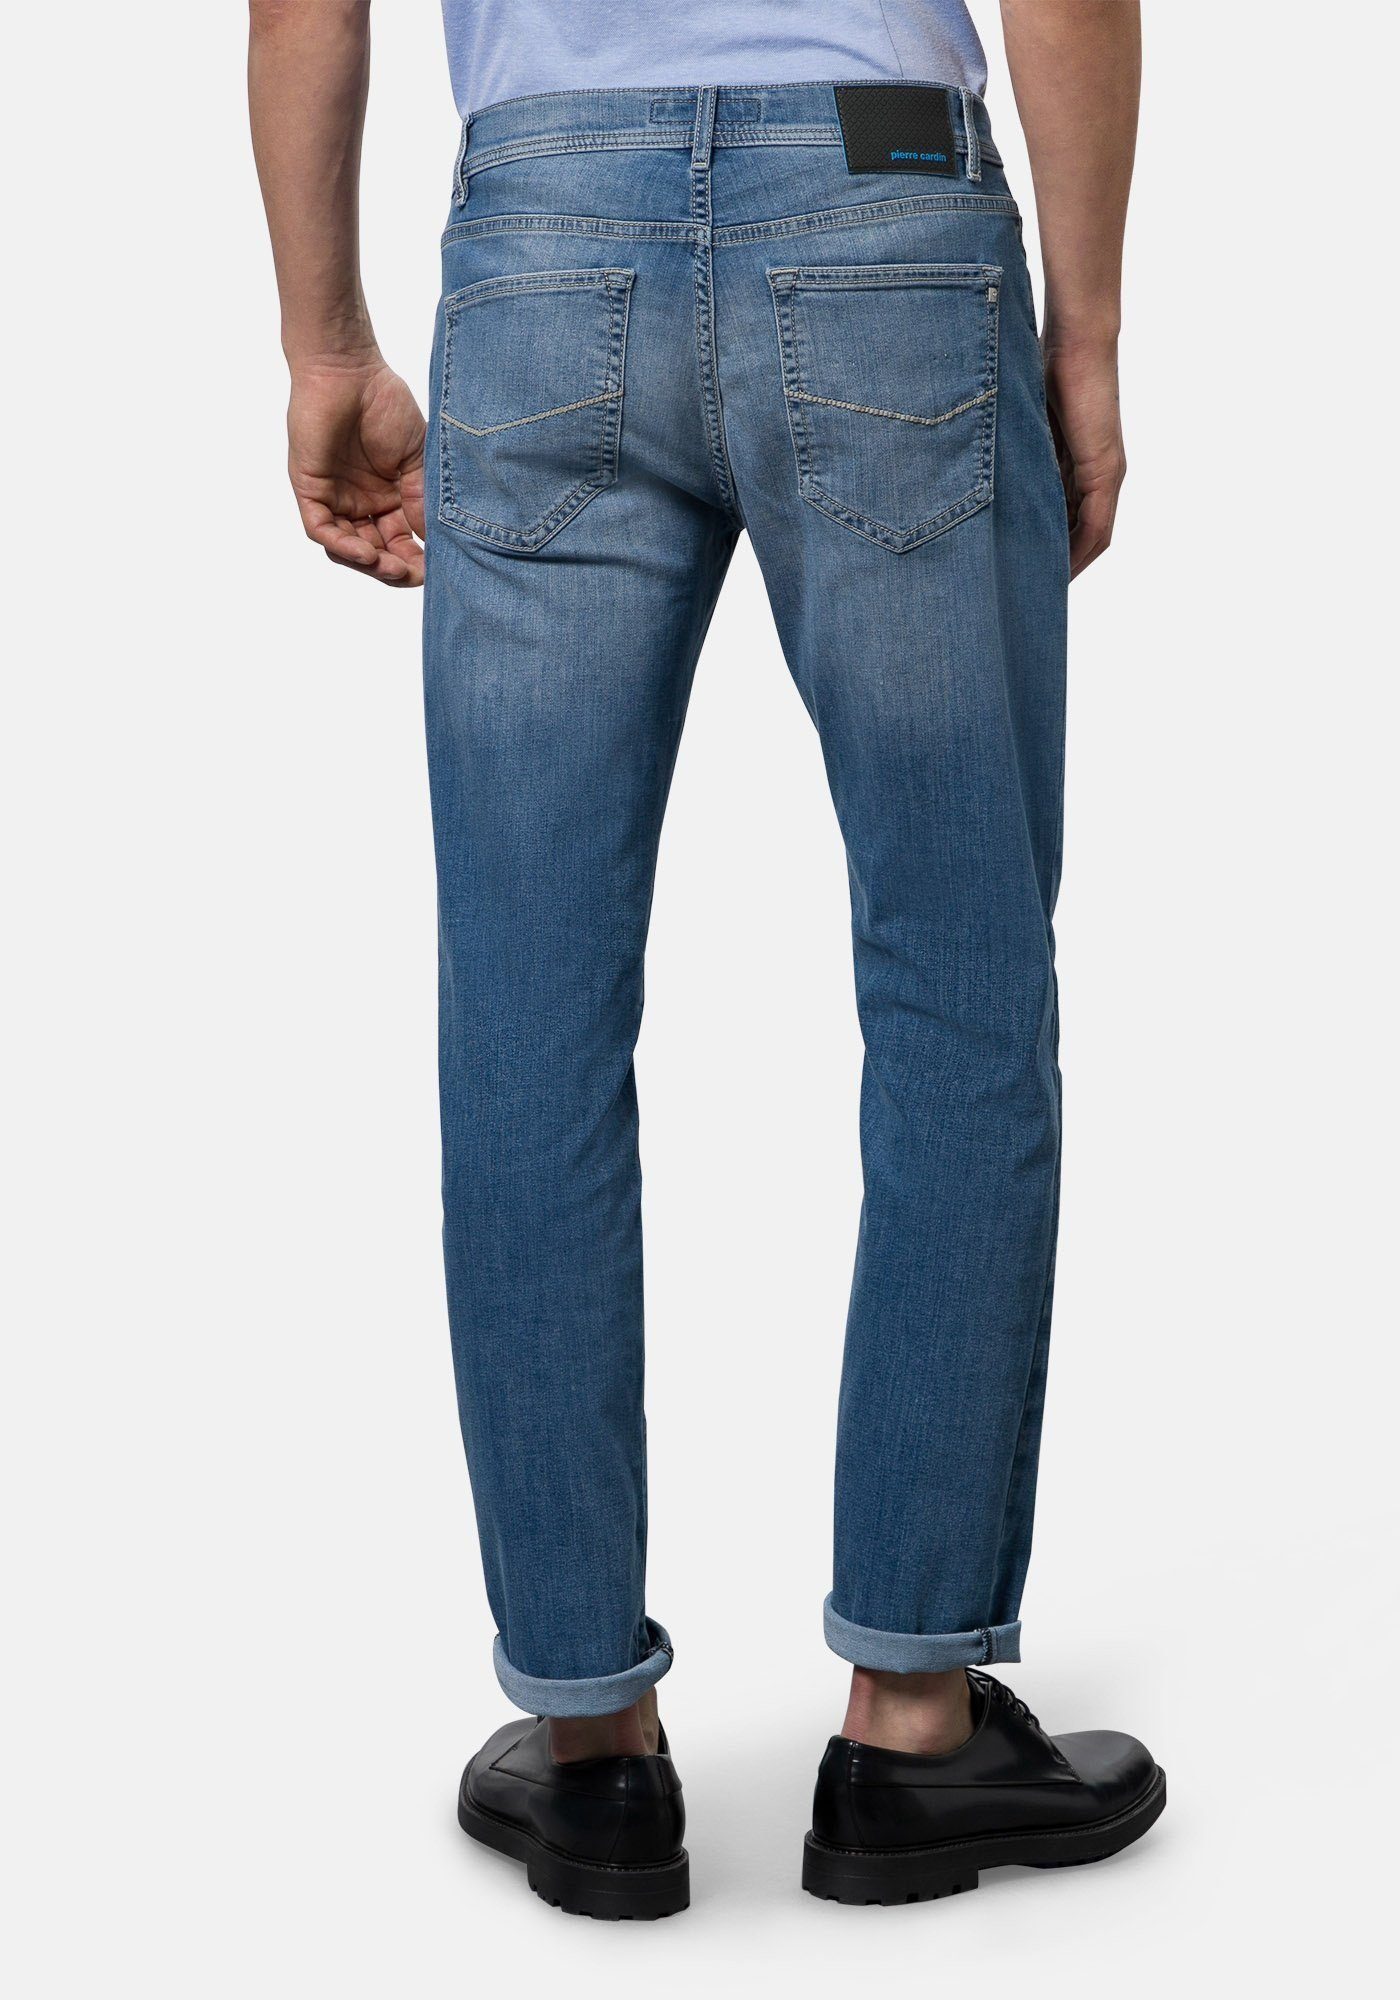 5-Pocket-Jeans Jeans Cardin Denim Control Lyon Clima Pierre